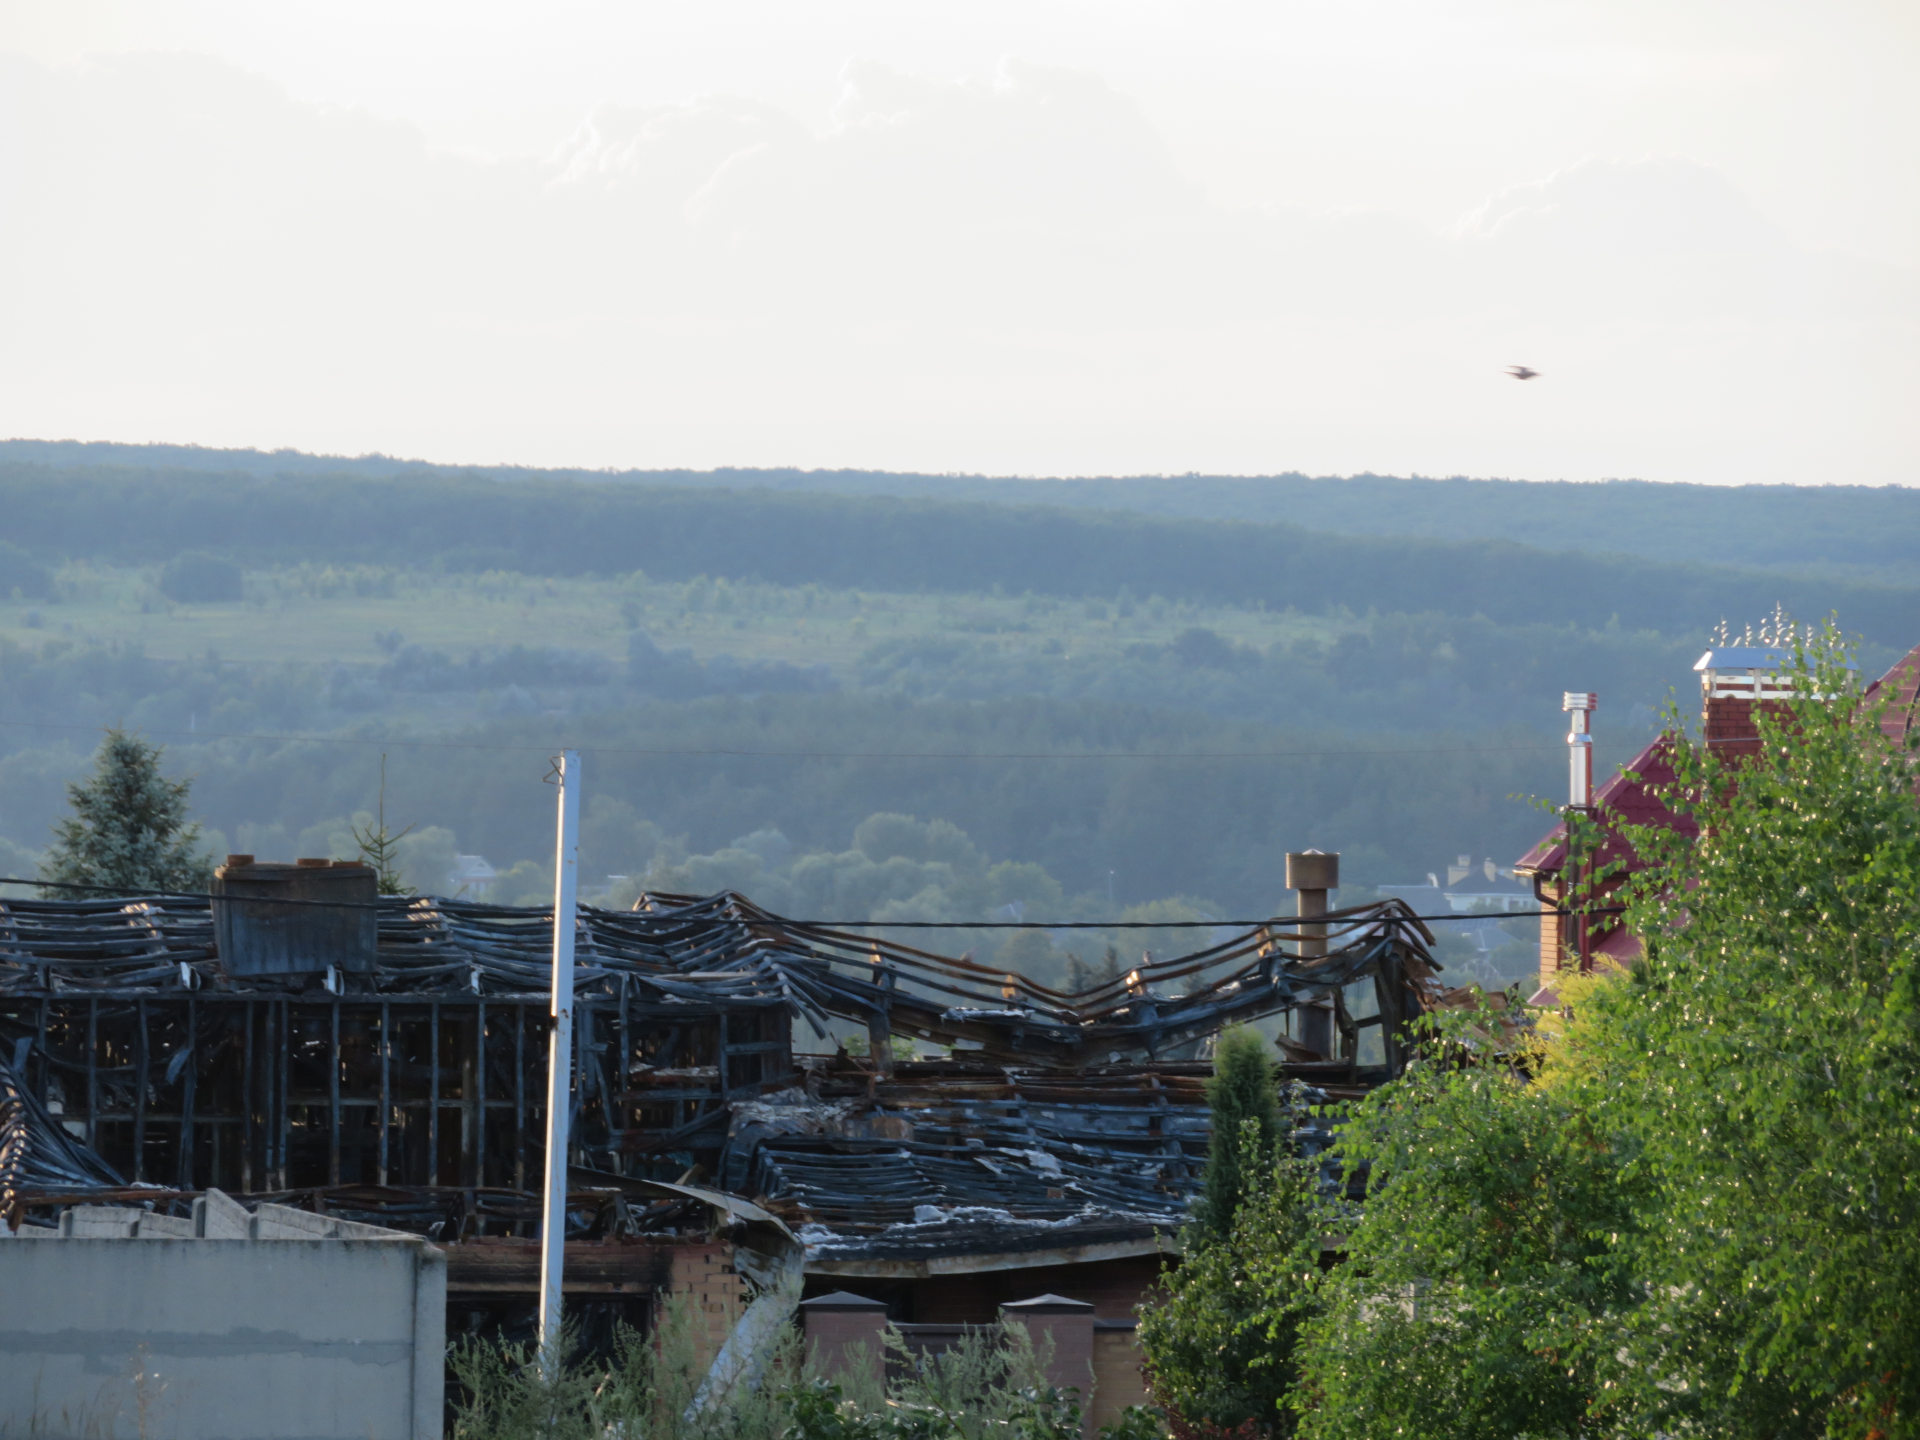 Foto válkou zničeného domu z vesnice Cirkuni z Charkova, červenec 2022. Jde o fotku dostupnou v rámci Wikimedia Commons.